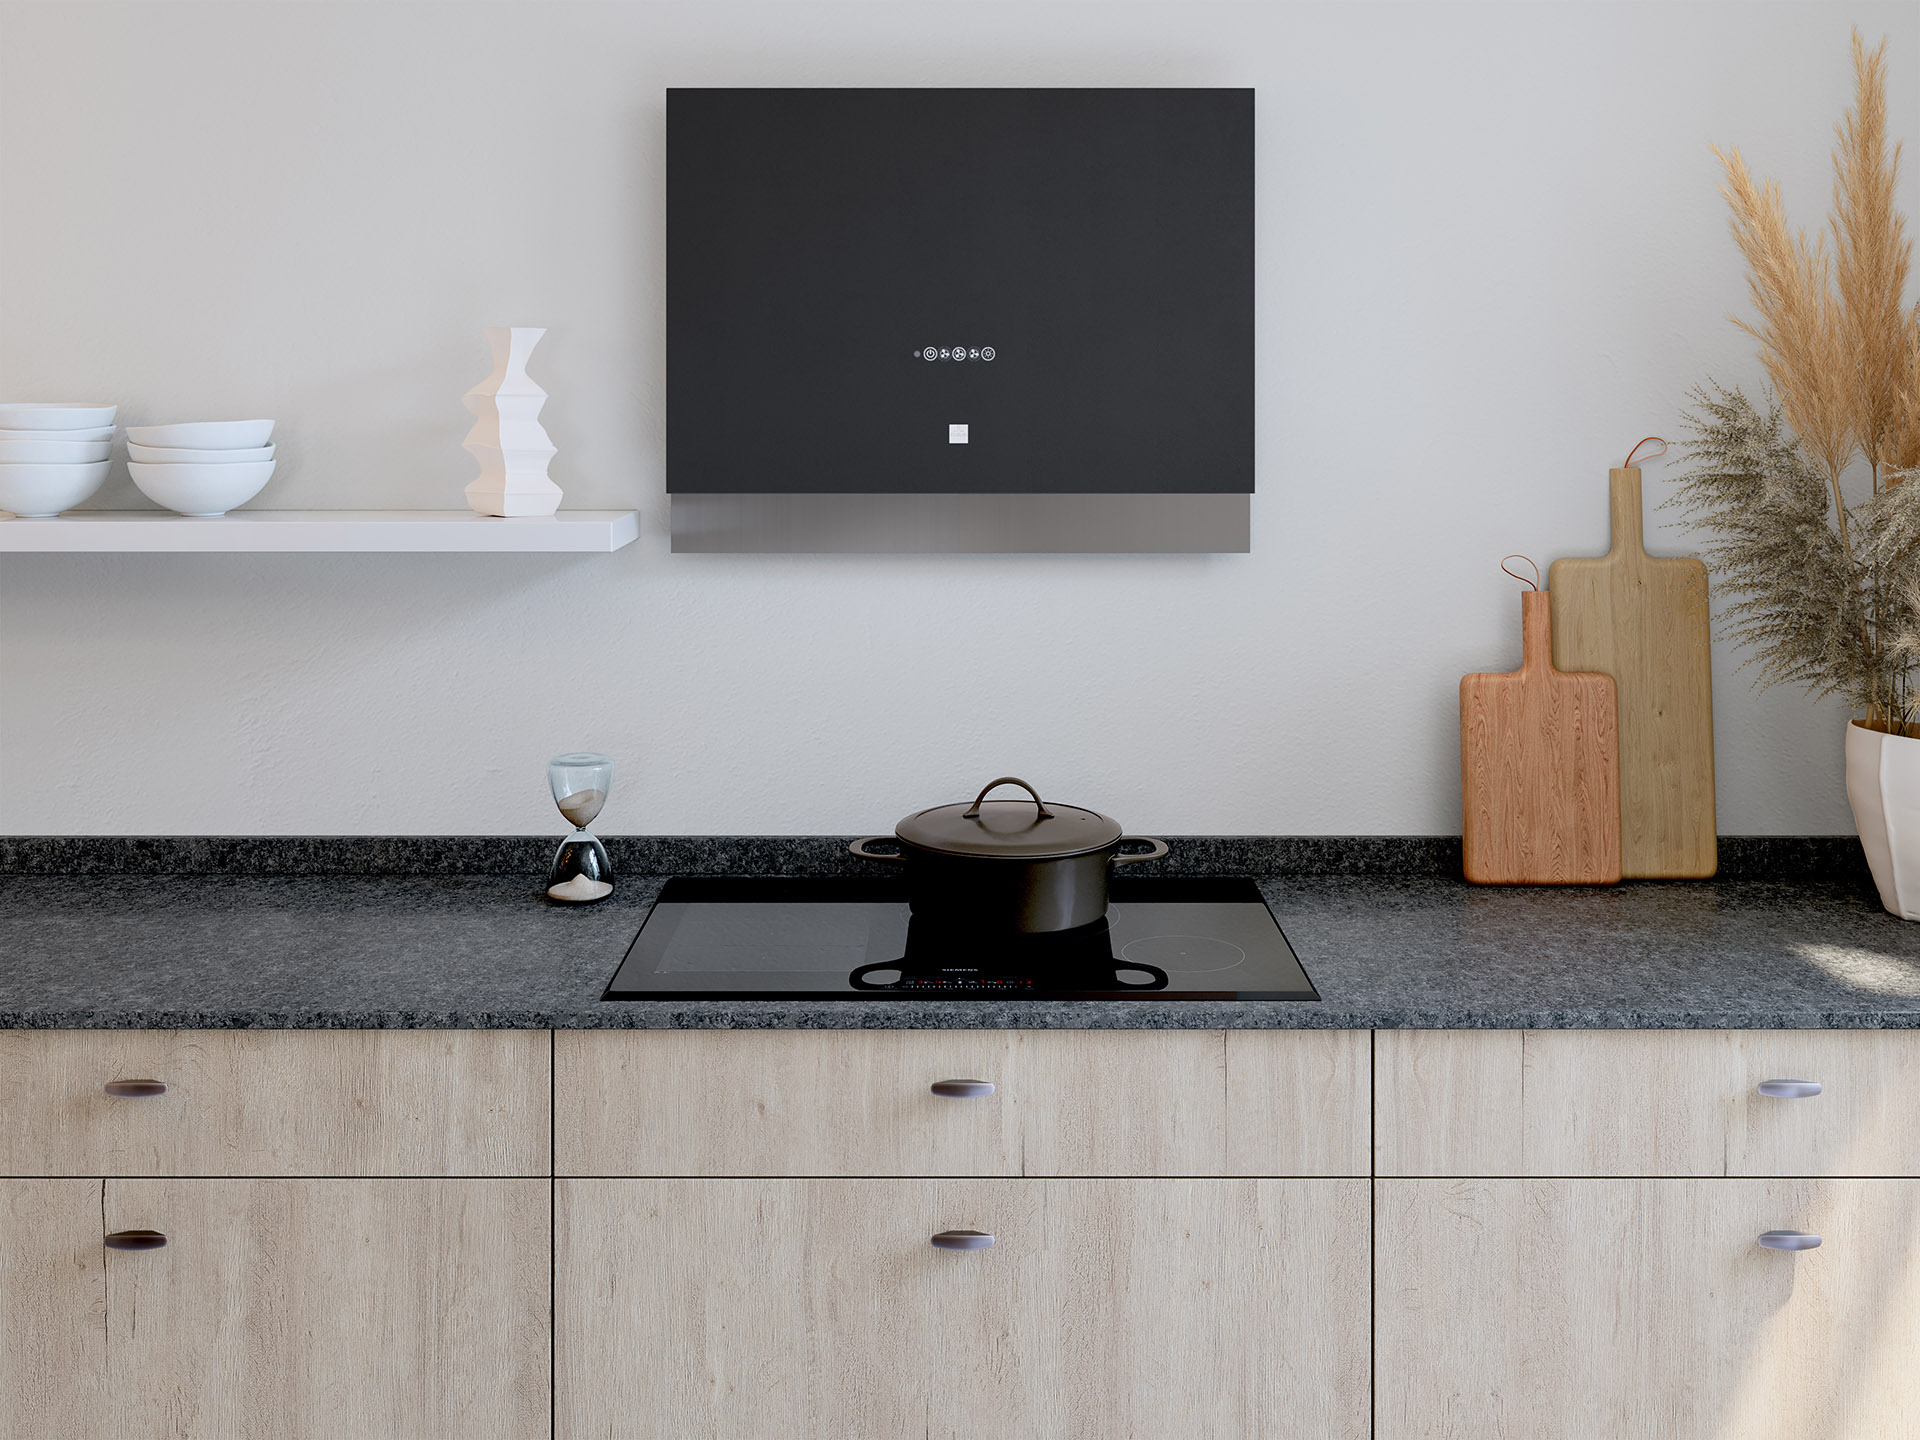 Image 3D du plan de travail d'une cuisine moderne avec plaques de cuisson et hotte